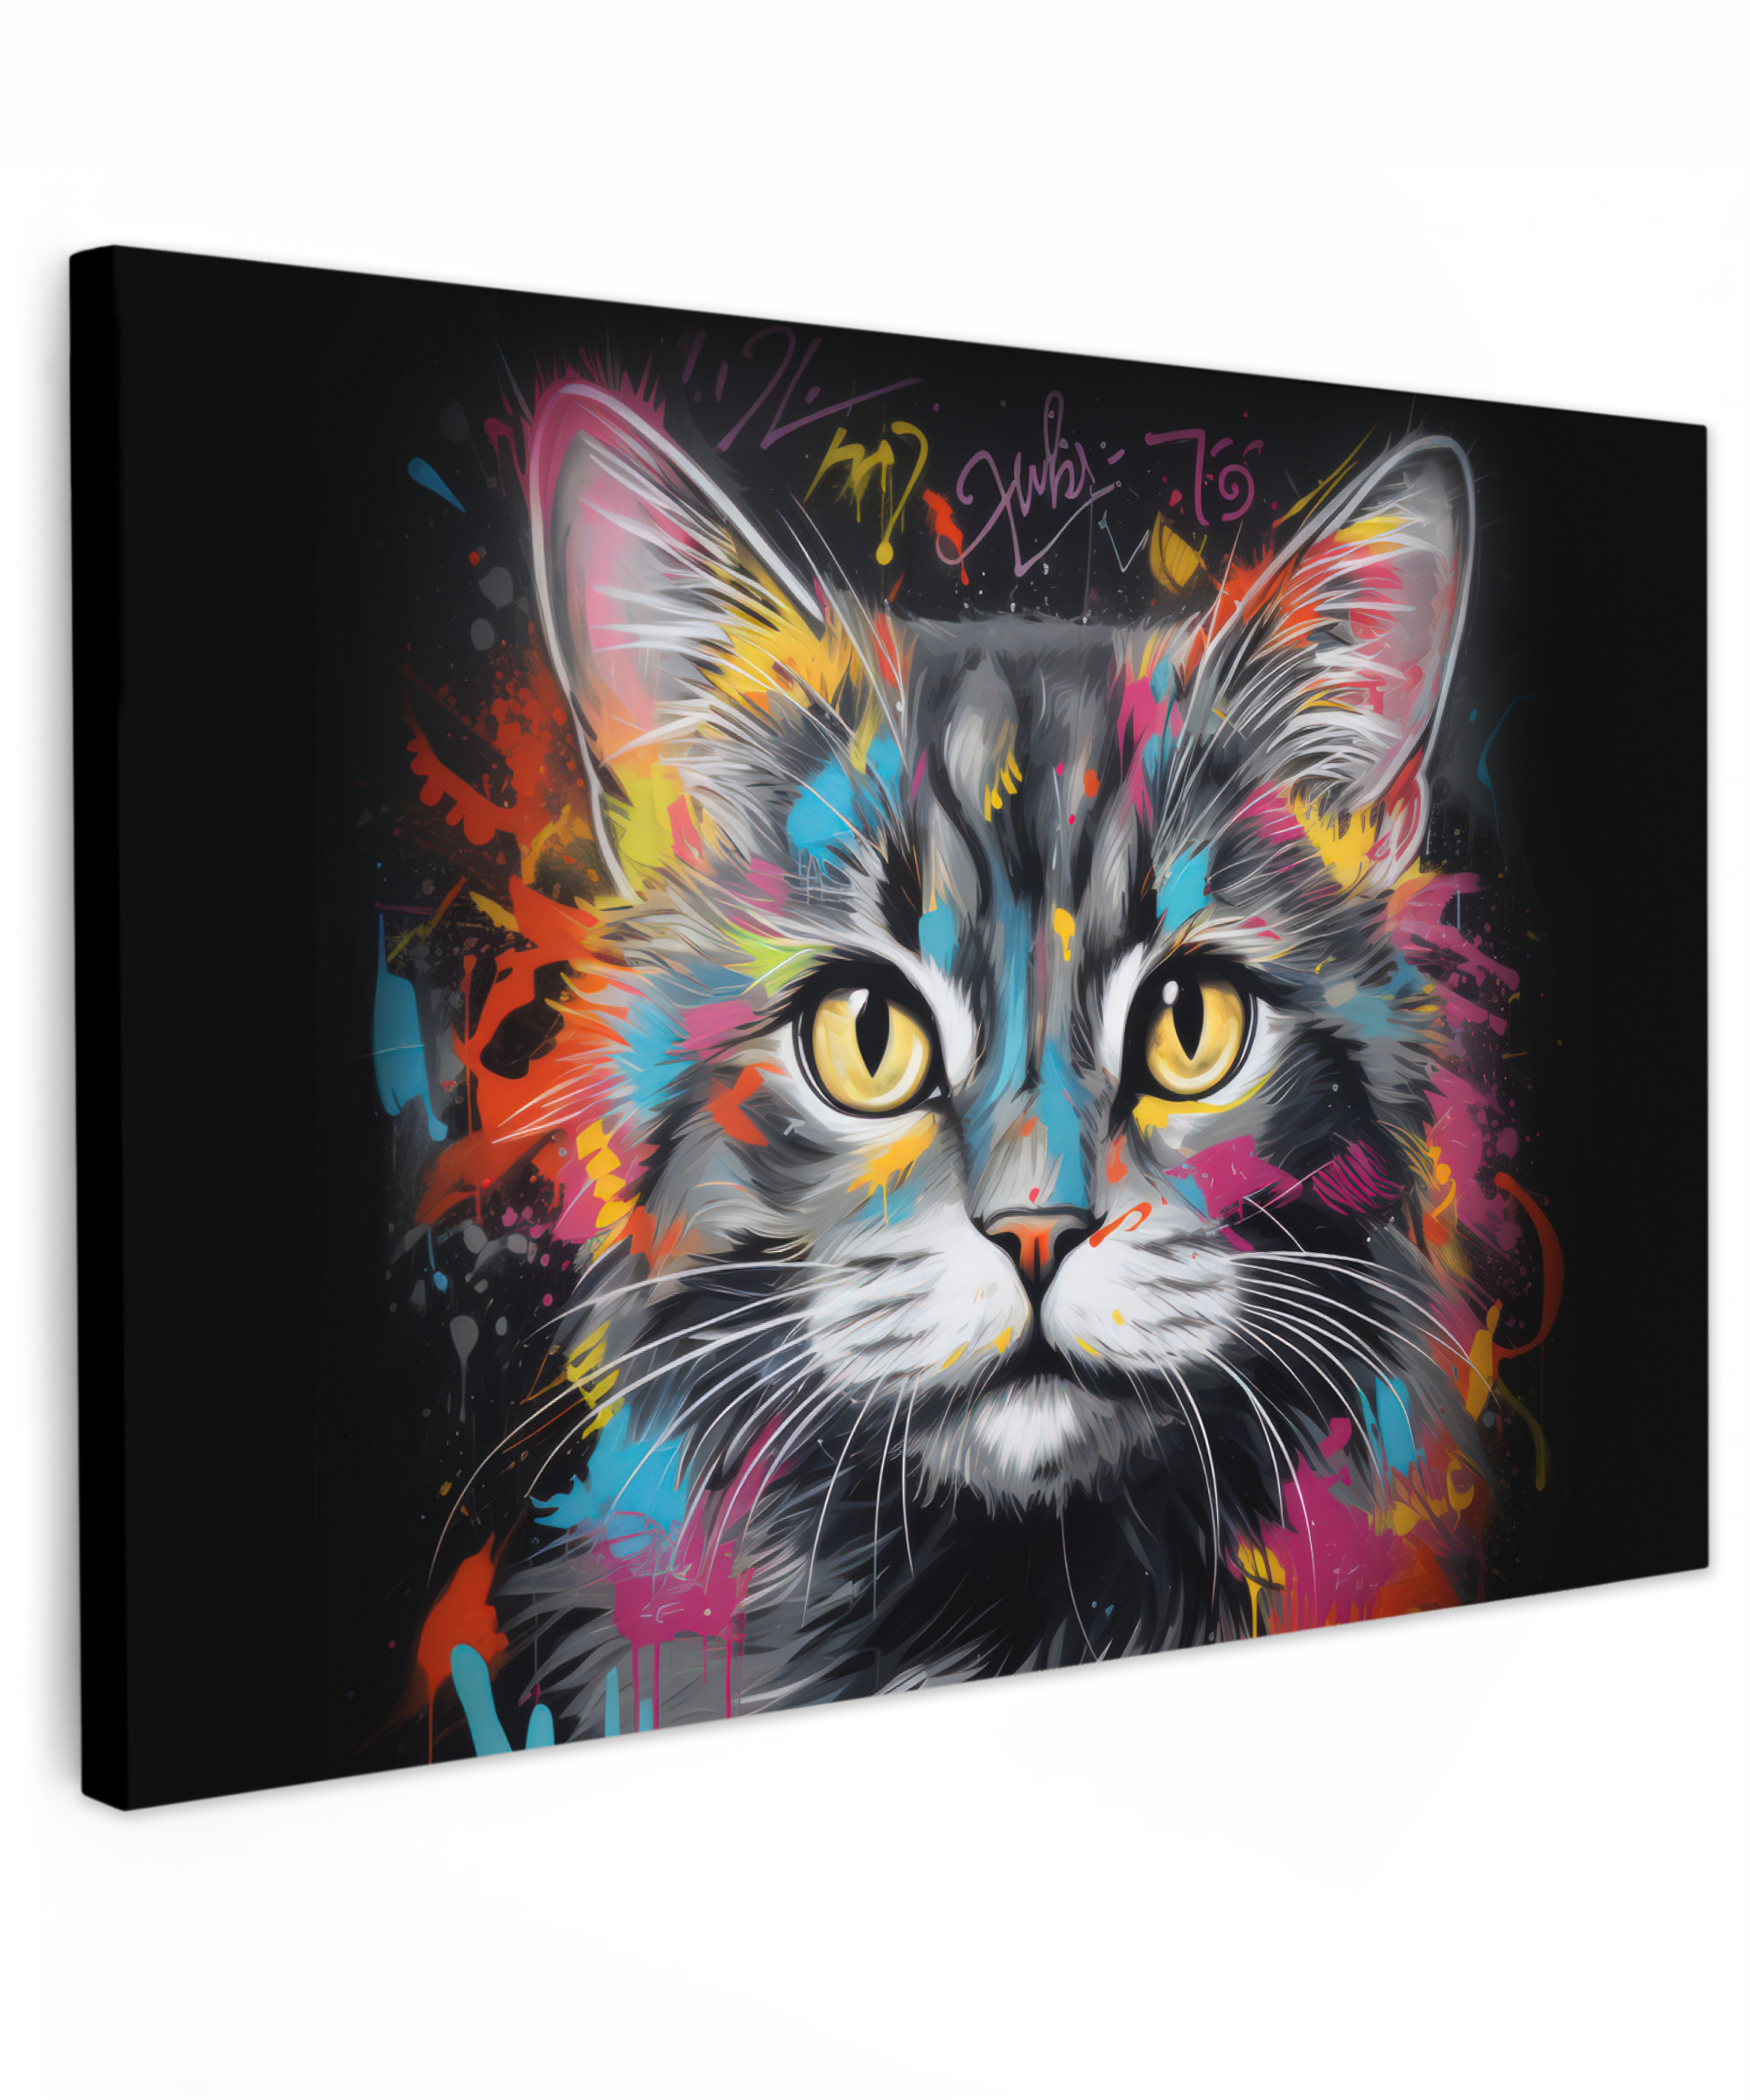 Leinwandbild - Katze - Graffiti - Tiere - Farben - Grau